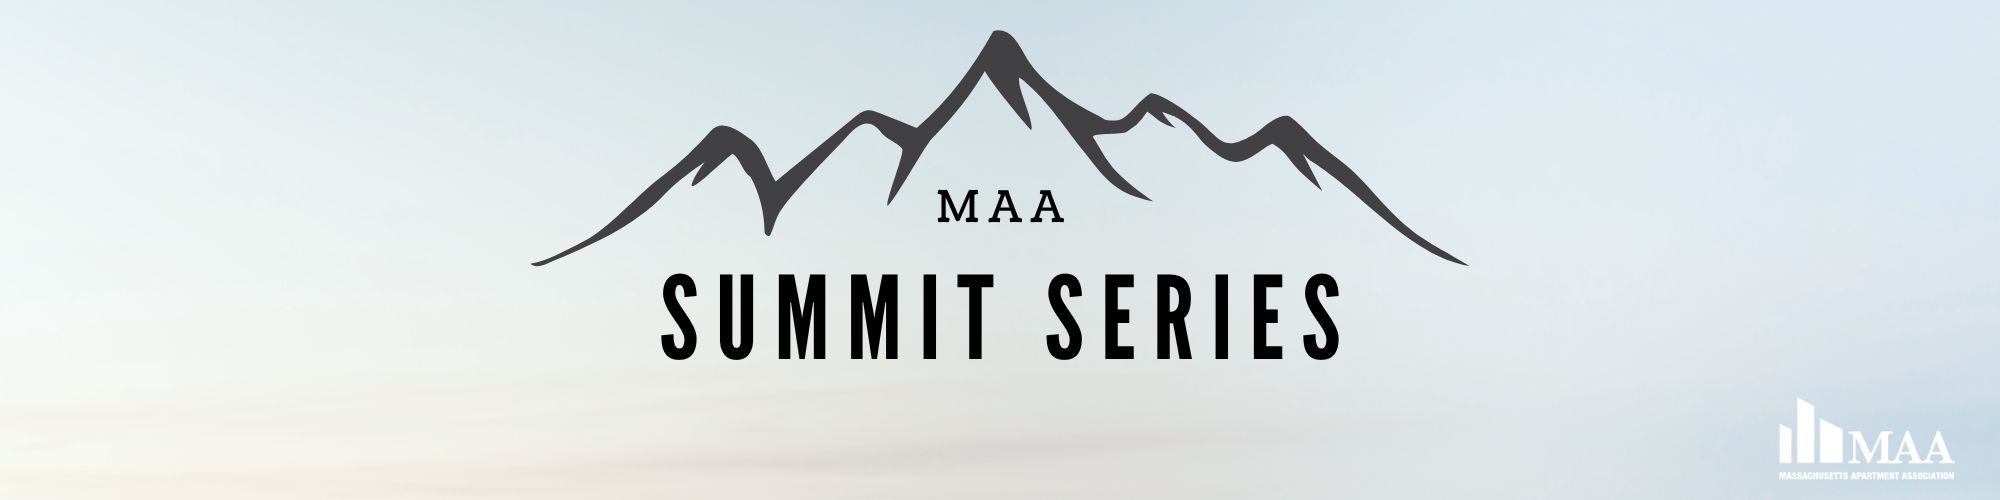 MAA Summit: Leasing & Marketing